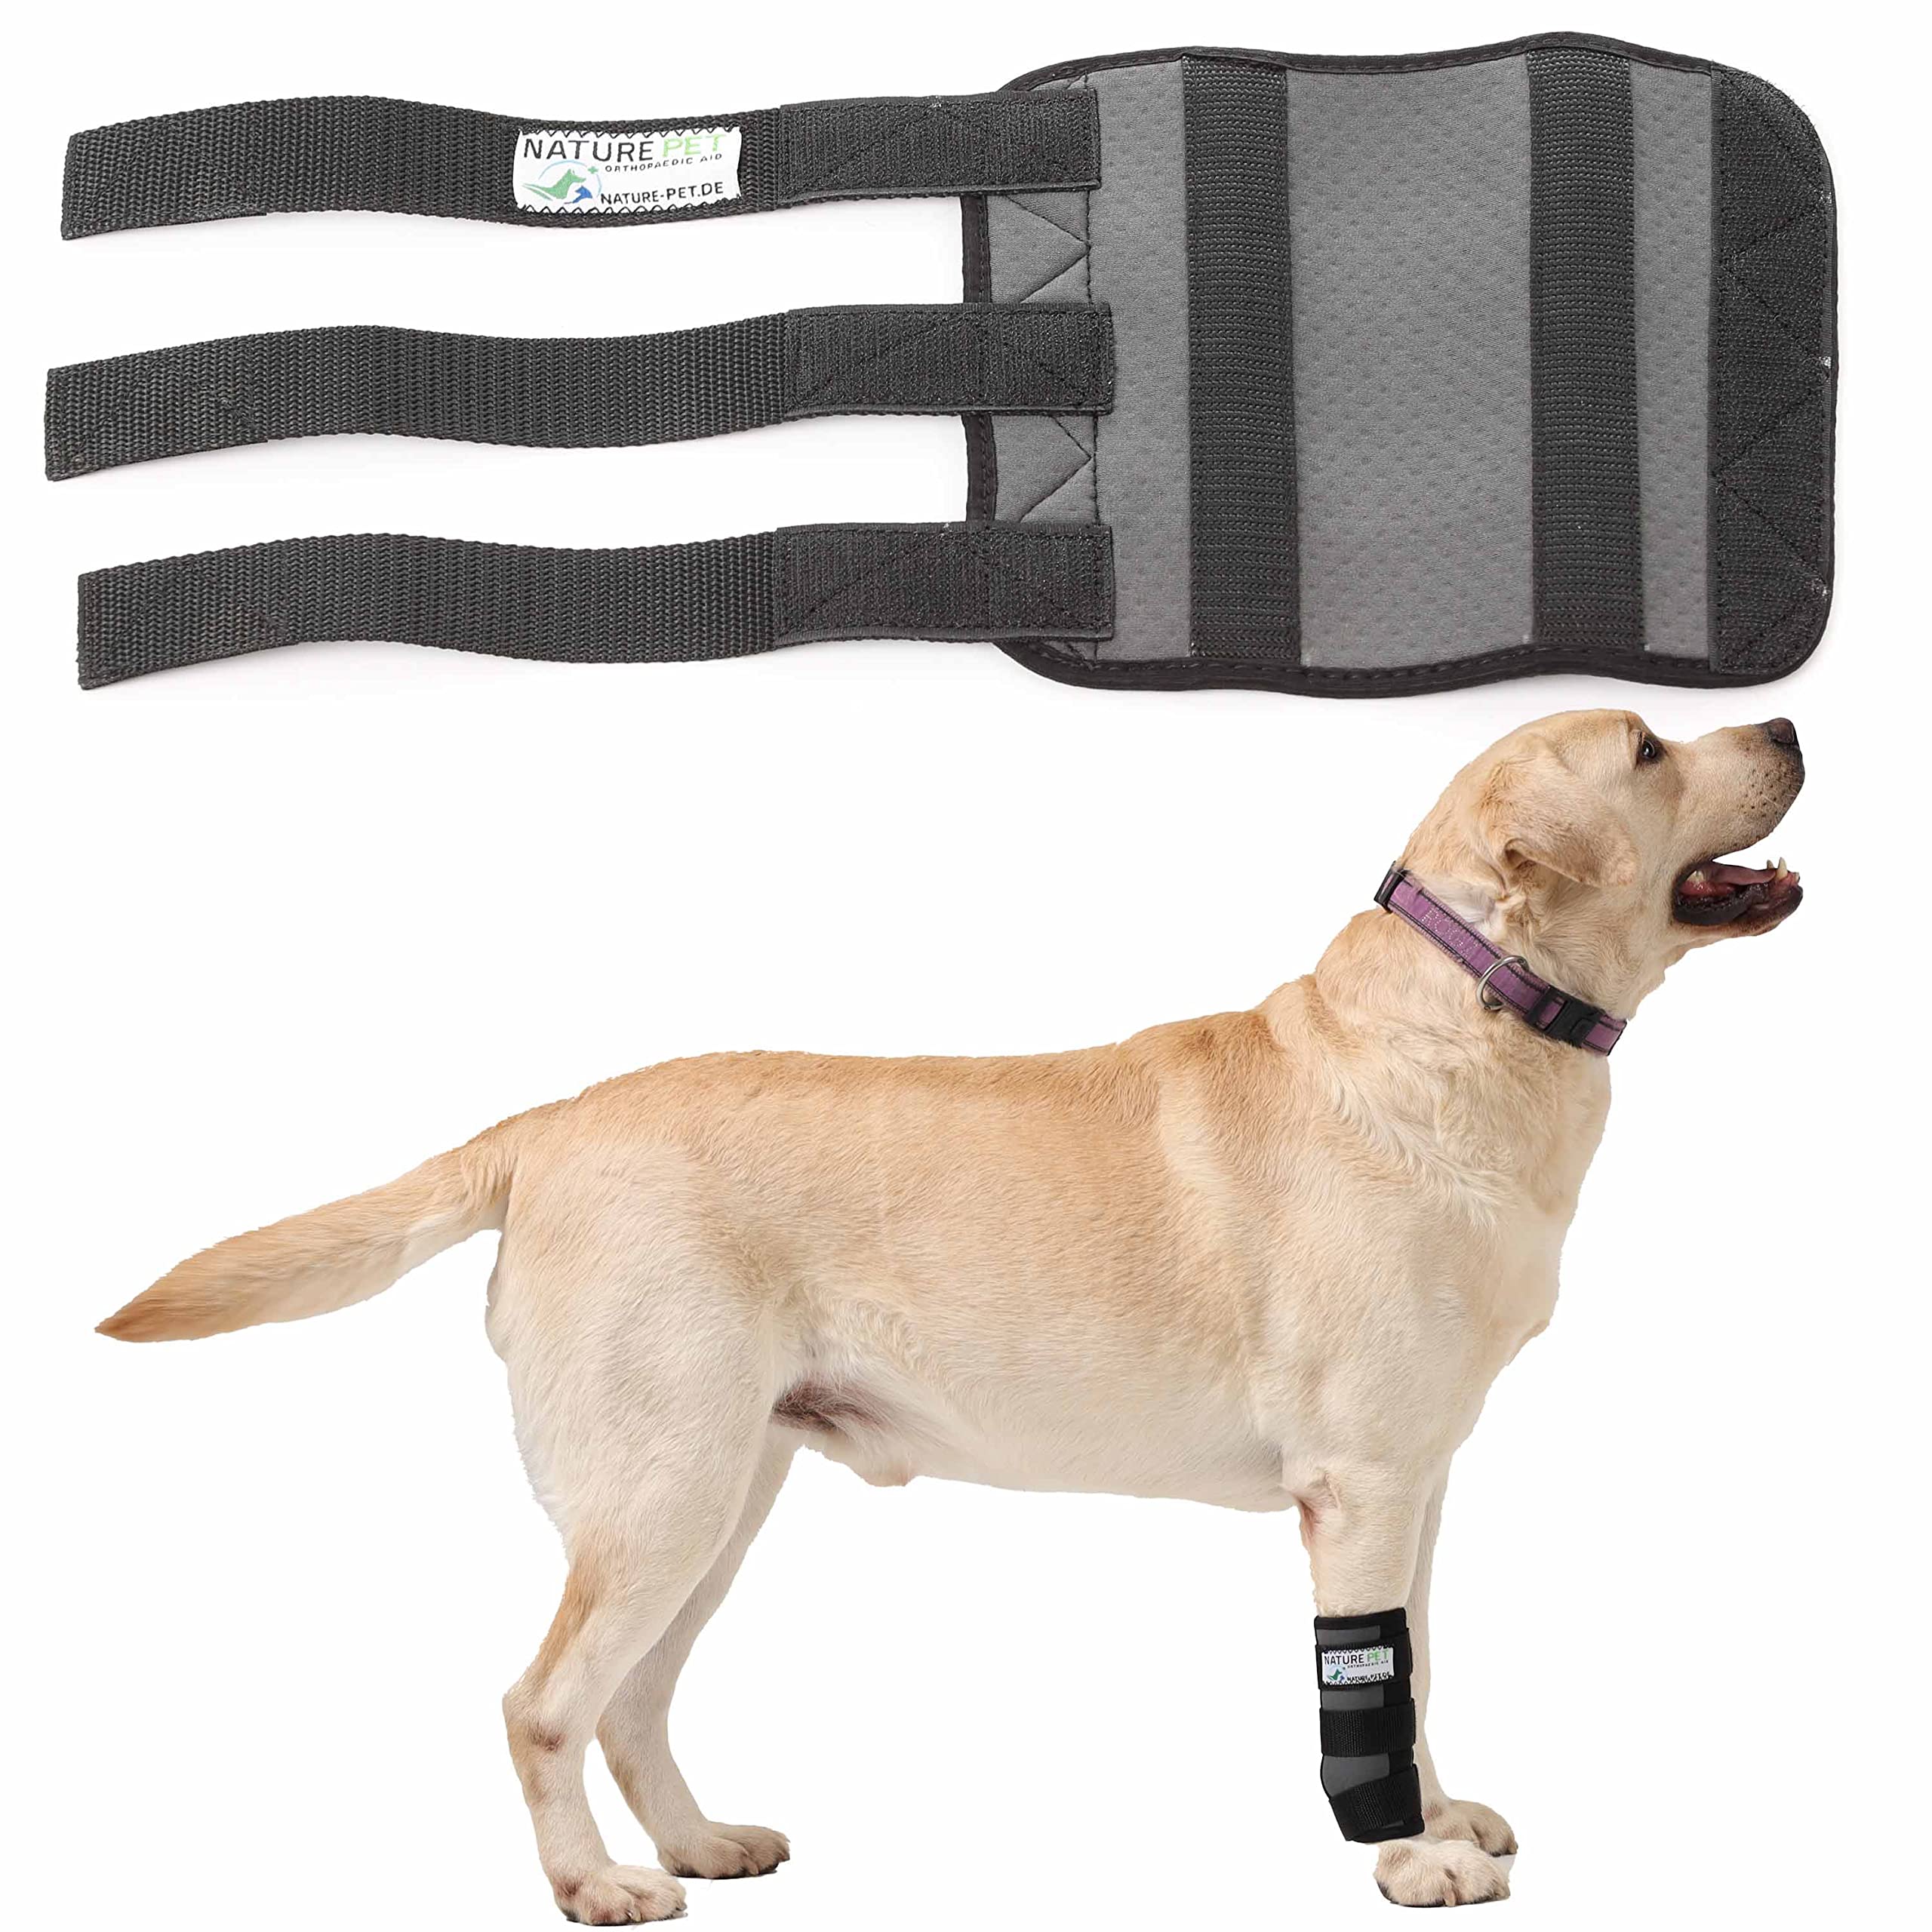 Nature Pet Hundesport Bandage für den Vorderlauf (L, Grau)